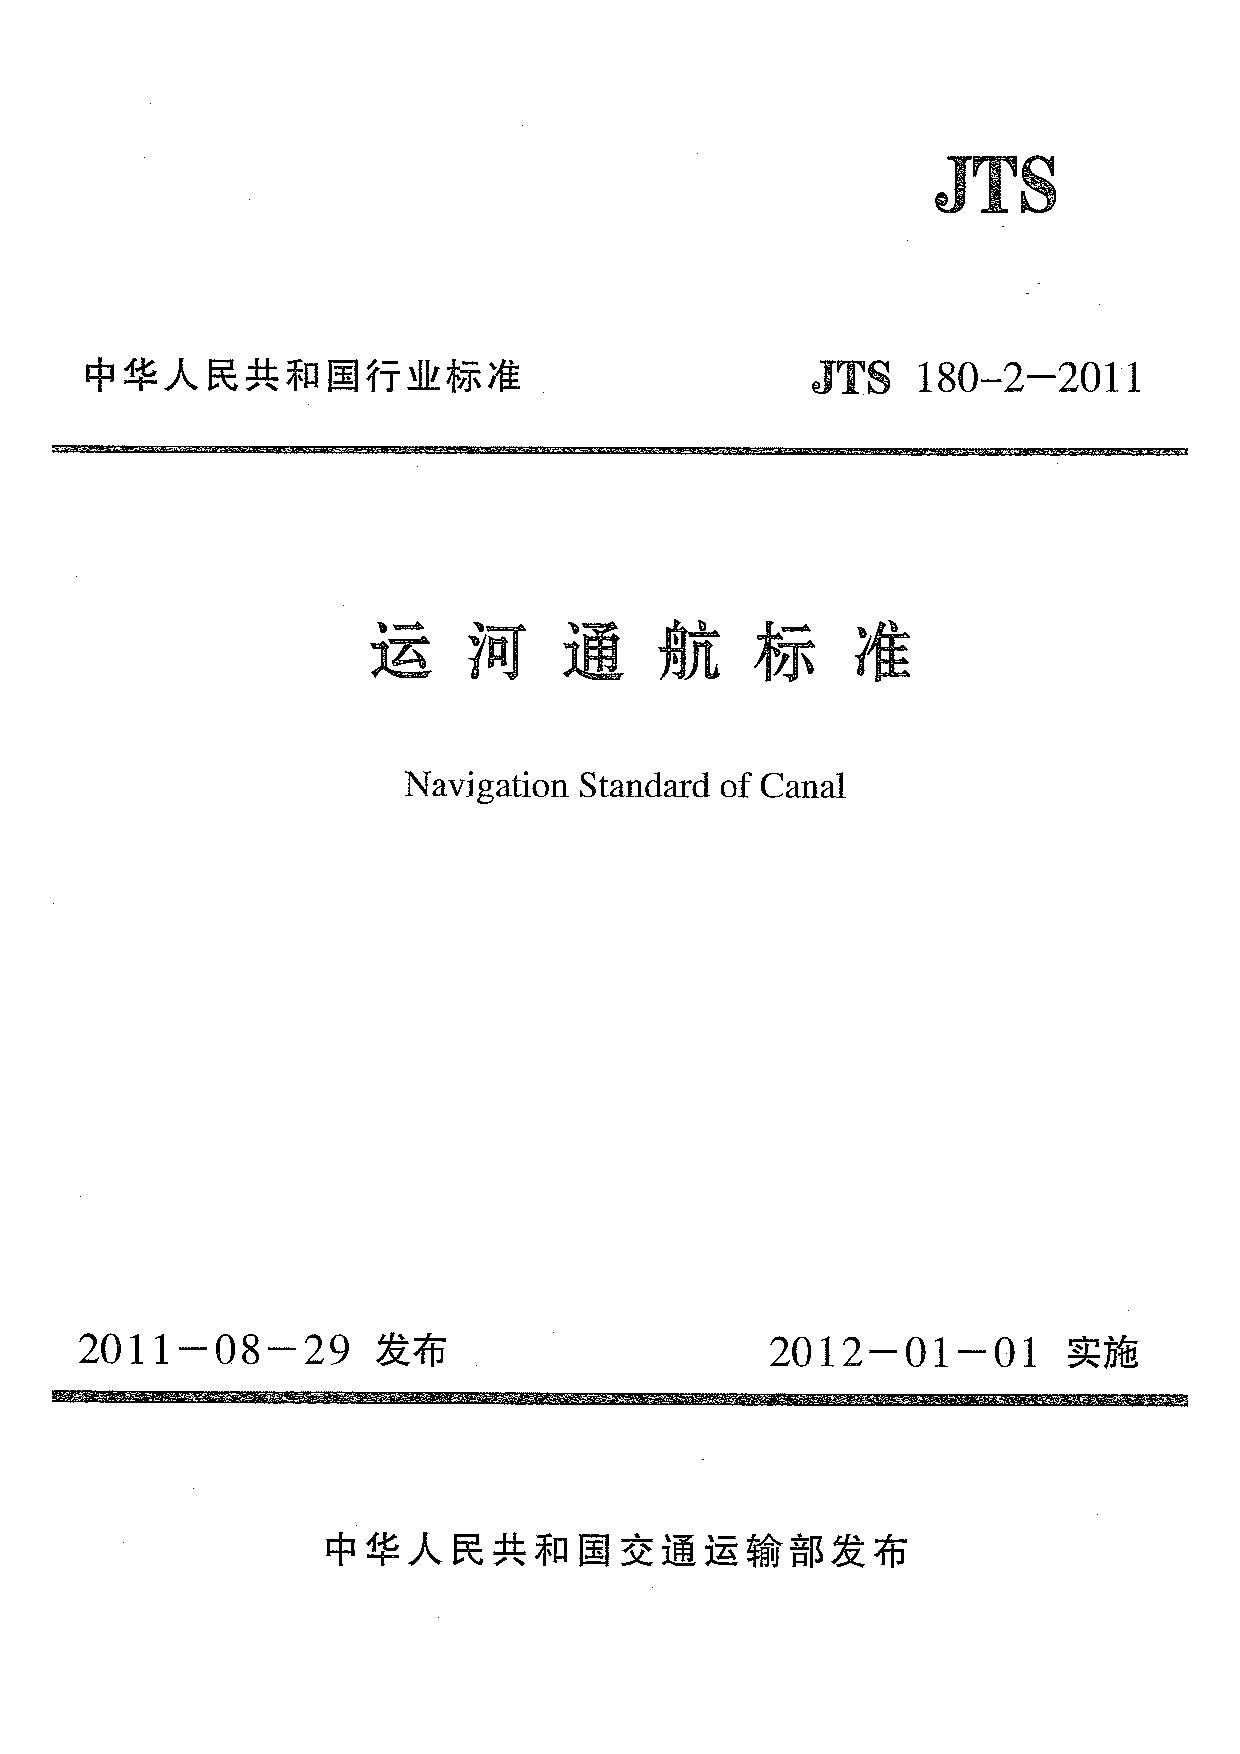 JTS 180-2-2011封面图